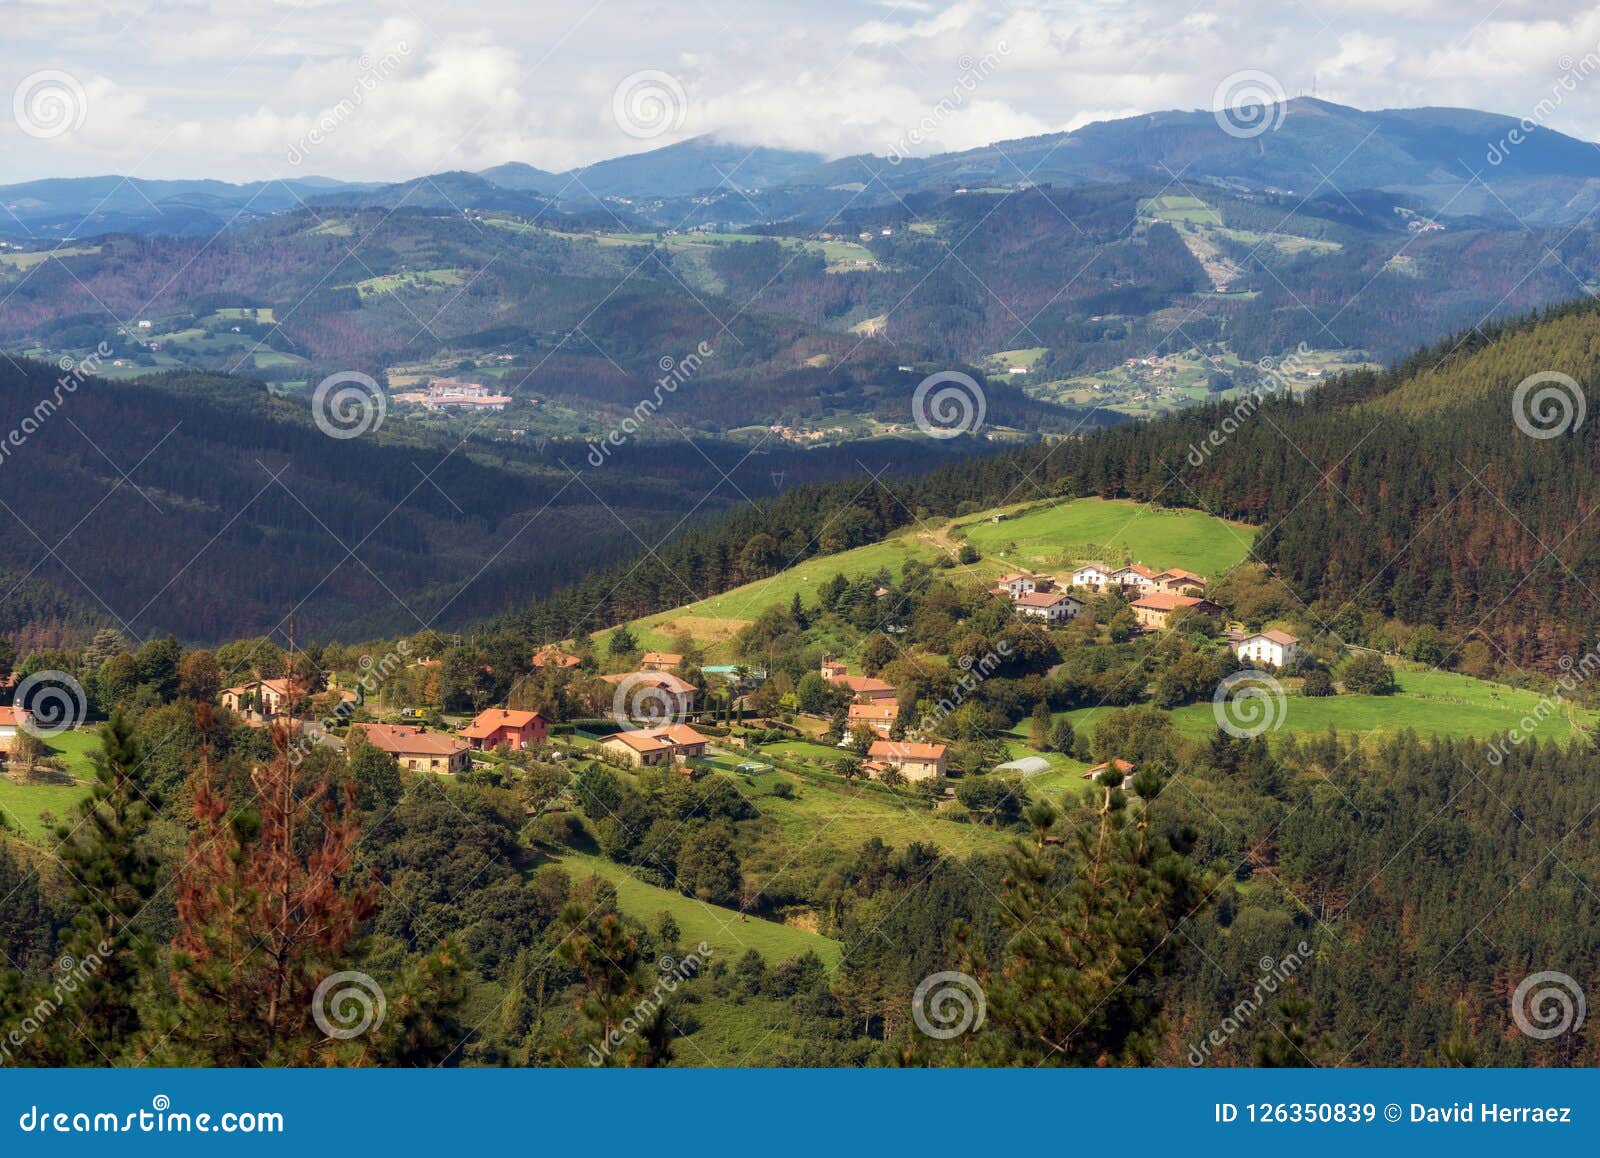 fisk og skaldyr gøre ondt dør Vizcaya Village and Mountain Landscape, Basque Country, Spain. Stock Image  - Image of euskadi, green: 126350839